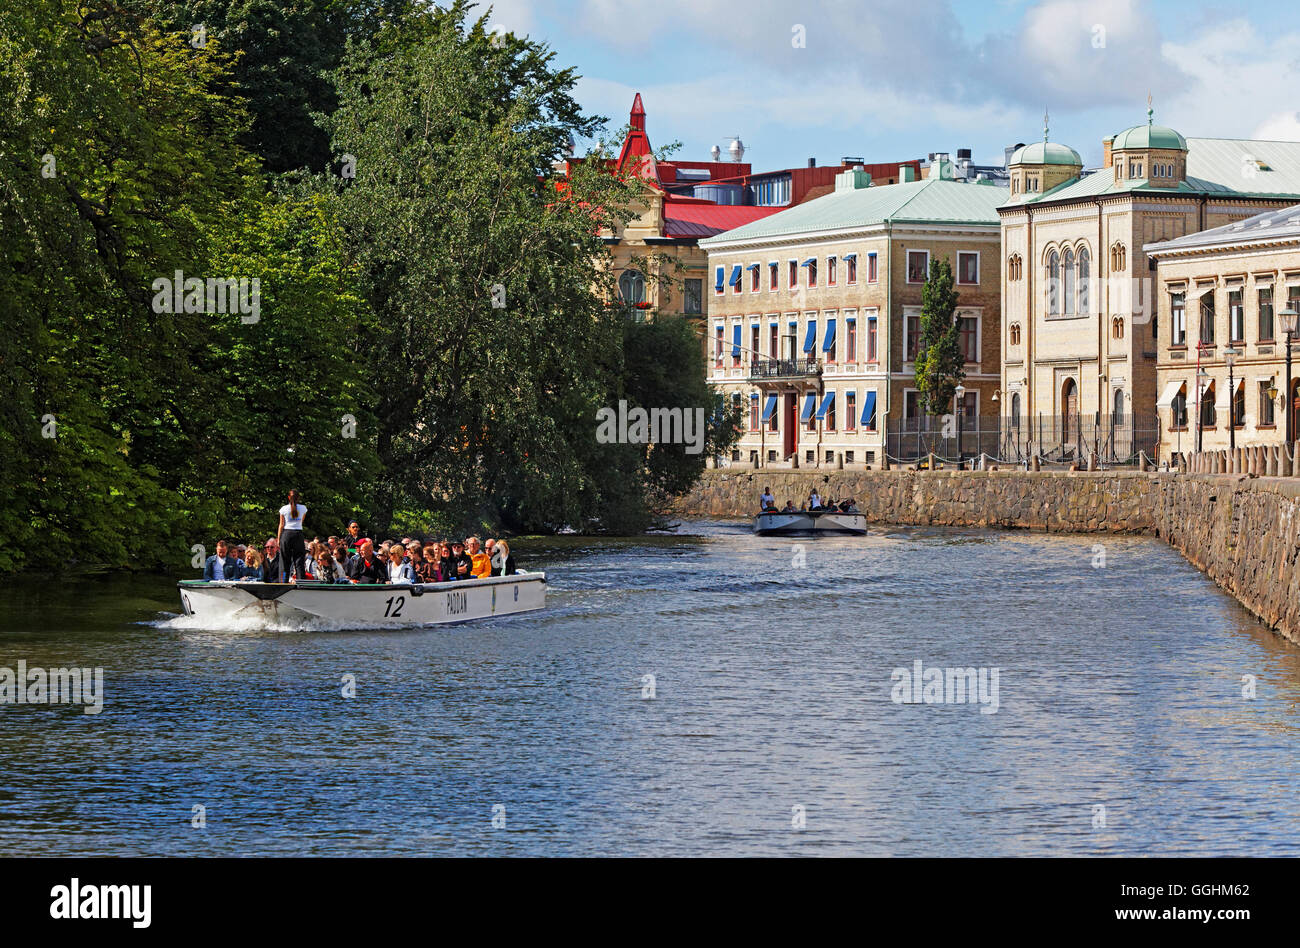 Excursión en barco en un canal en Wallgraben y fachadas históricas de la ciudad vieja, en Gotemburgo, Suecia Foto de stock